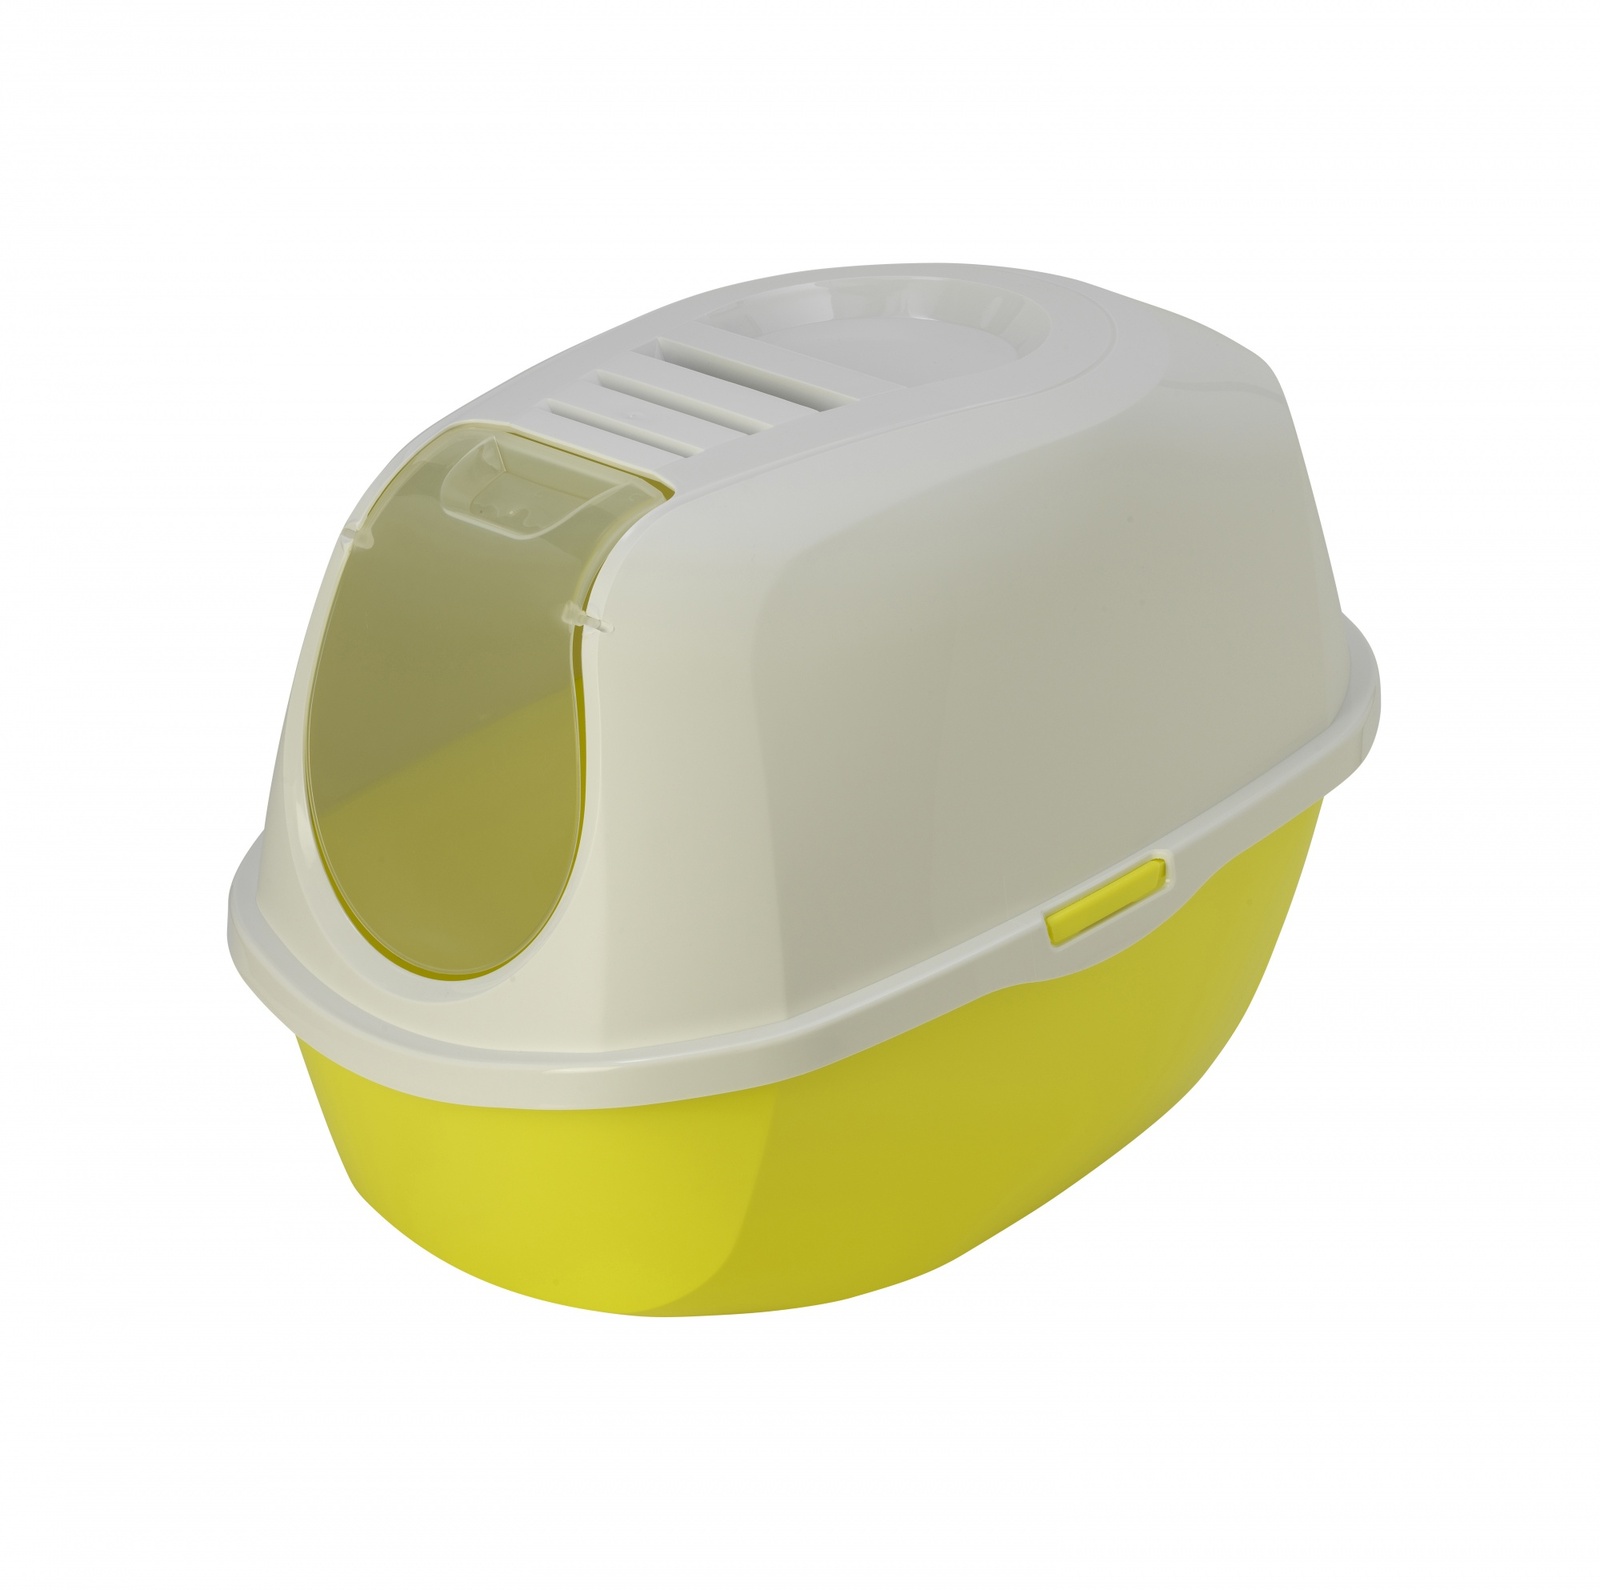 Moderna Moderna туалет-домик SmartCat с угольным фильтром, 54х40х41см, лимонно-желтый (1,2 кг) moderna moderna туалет домик smartcat с угольным фильтром 54х40х41см теплый серый 1 2 кг